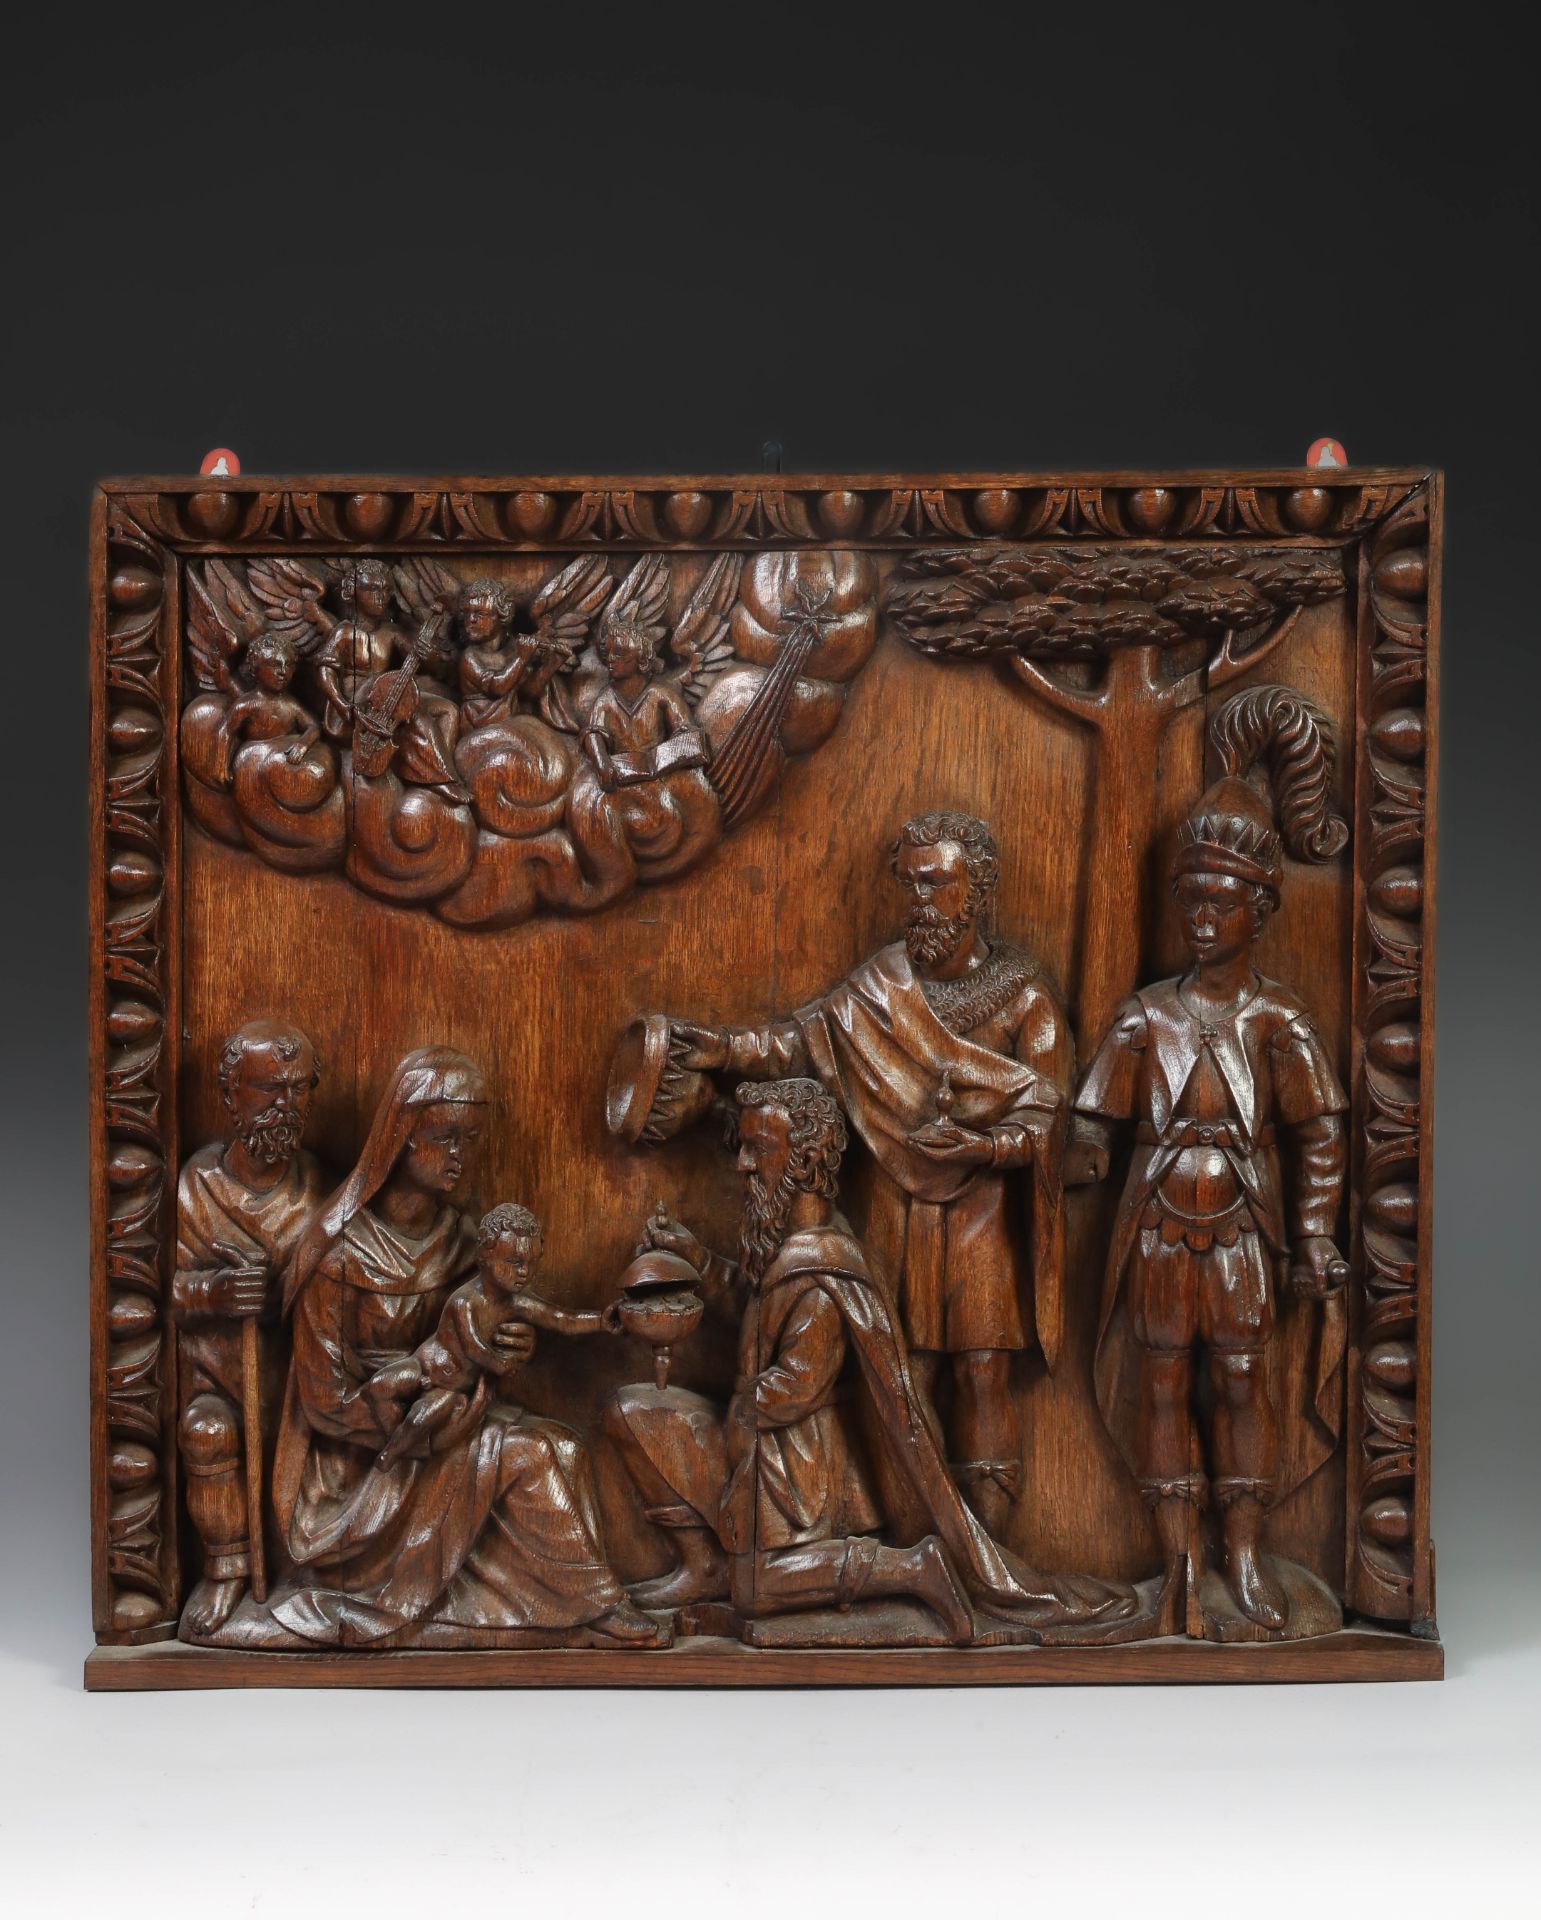 "L'Adoration des Mages", représentant les Trois Rois offrant des cadeaux à l'Enfant Jésus, sous